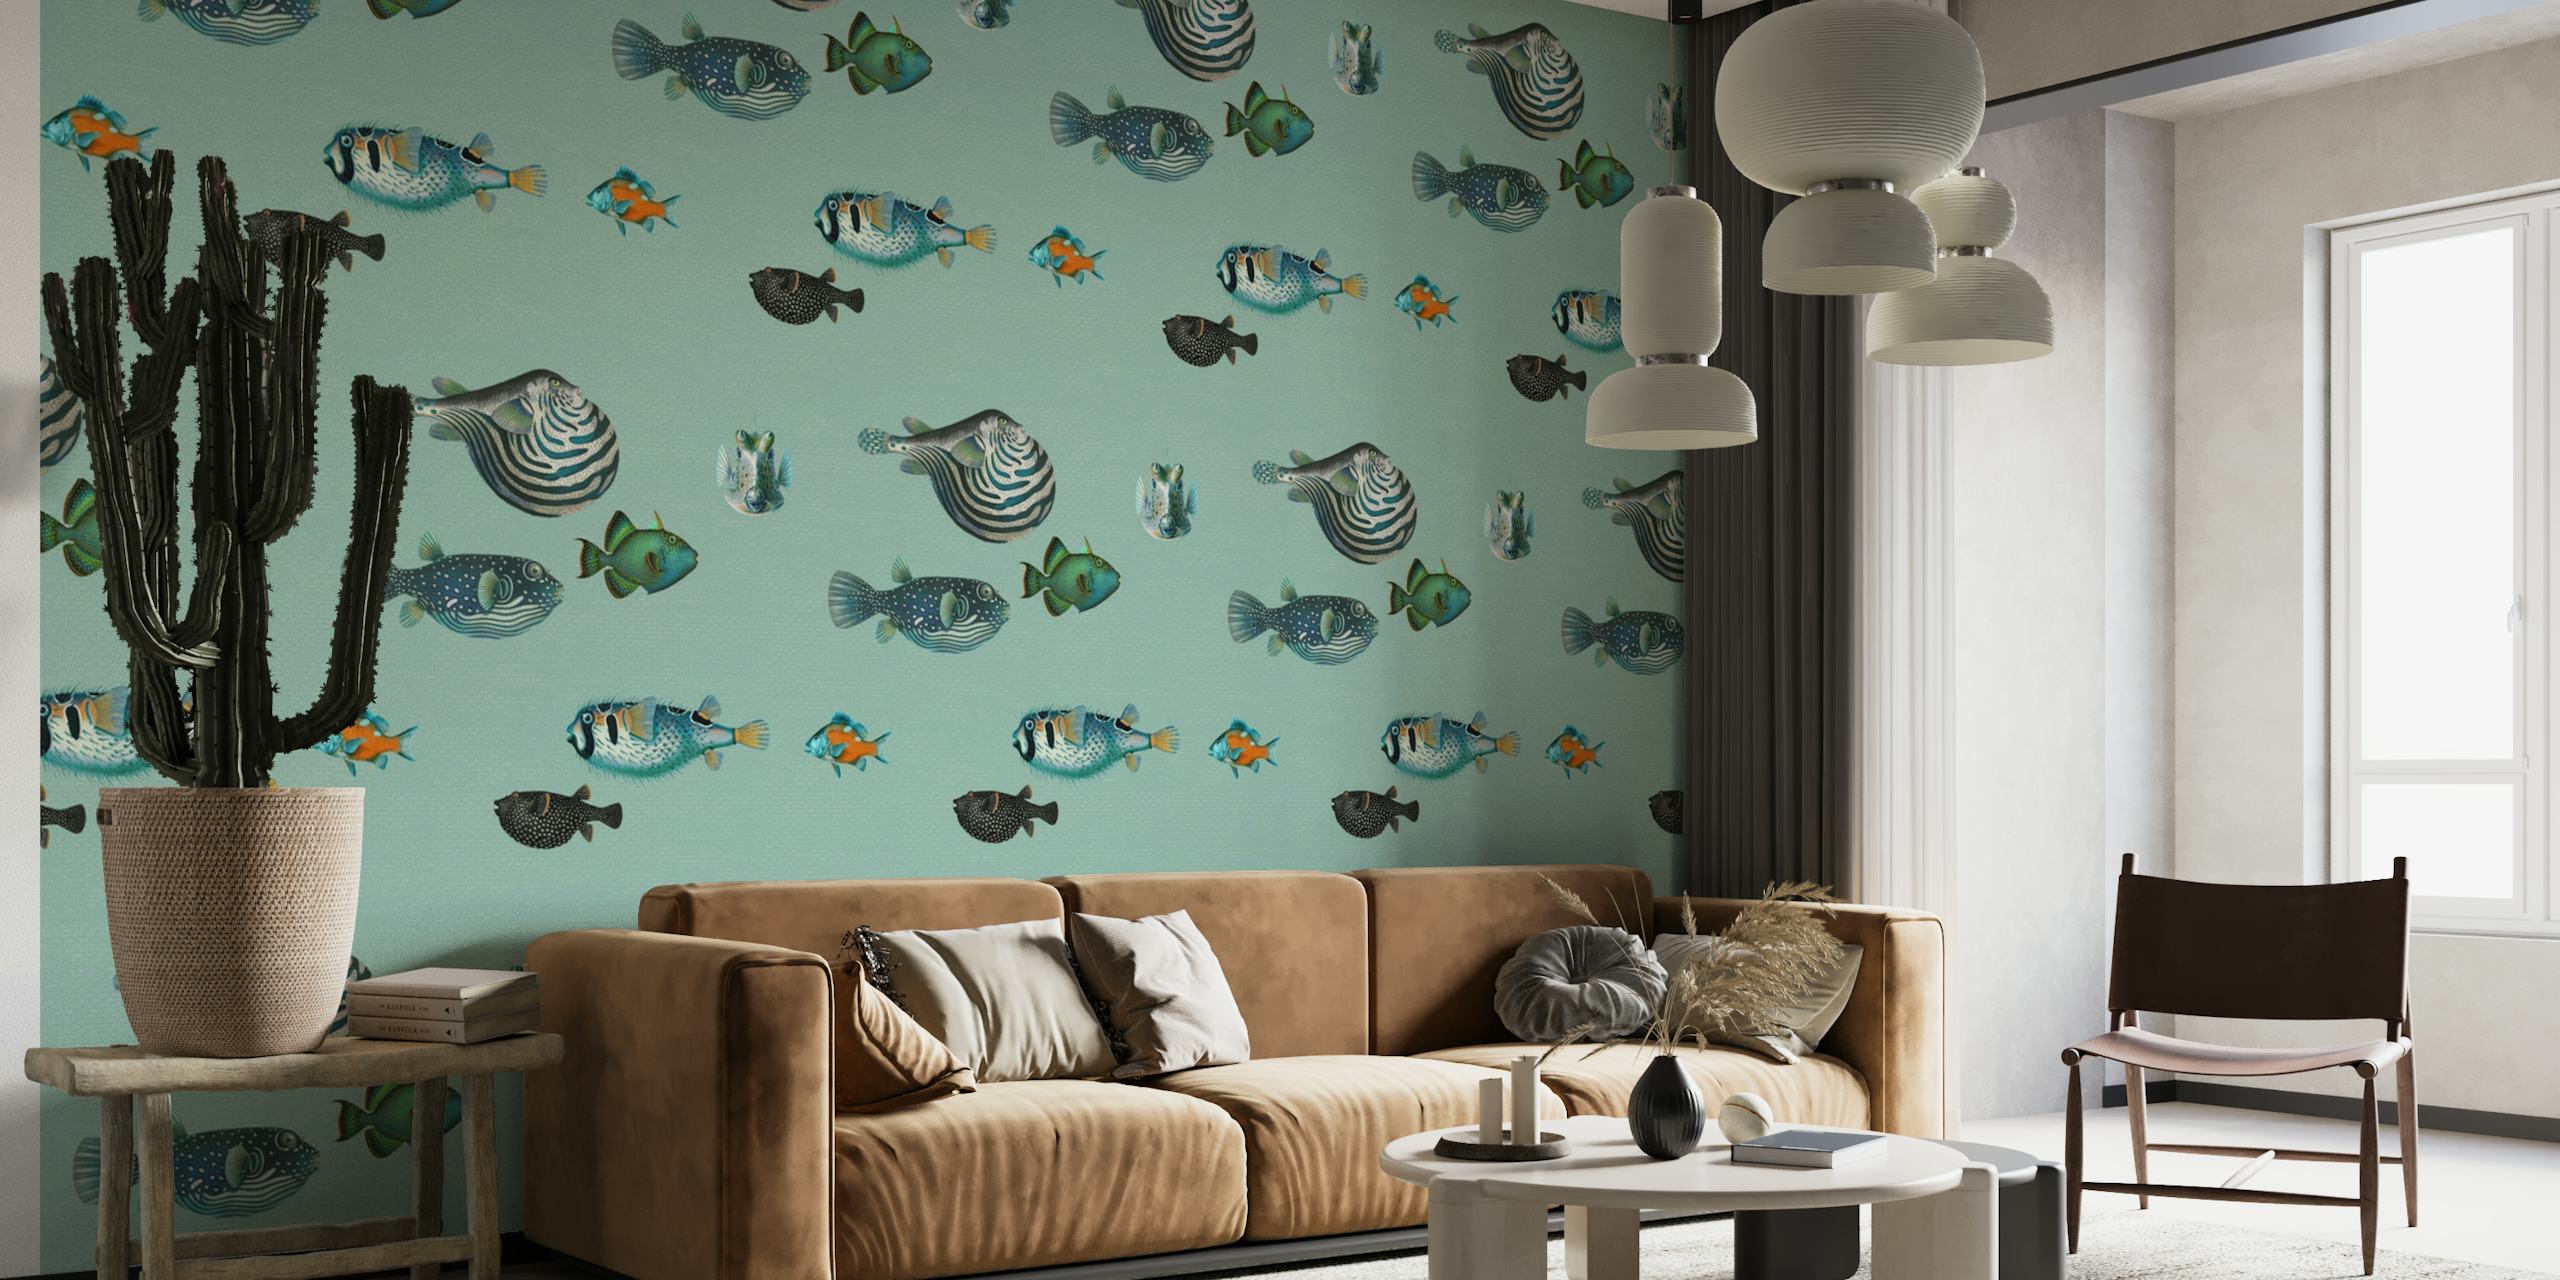 Illustratief vispatroon op eendenei blauwe achtergrondmuurschildering